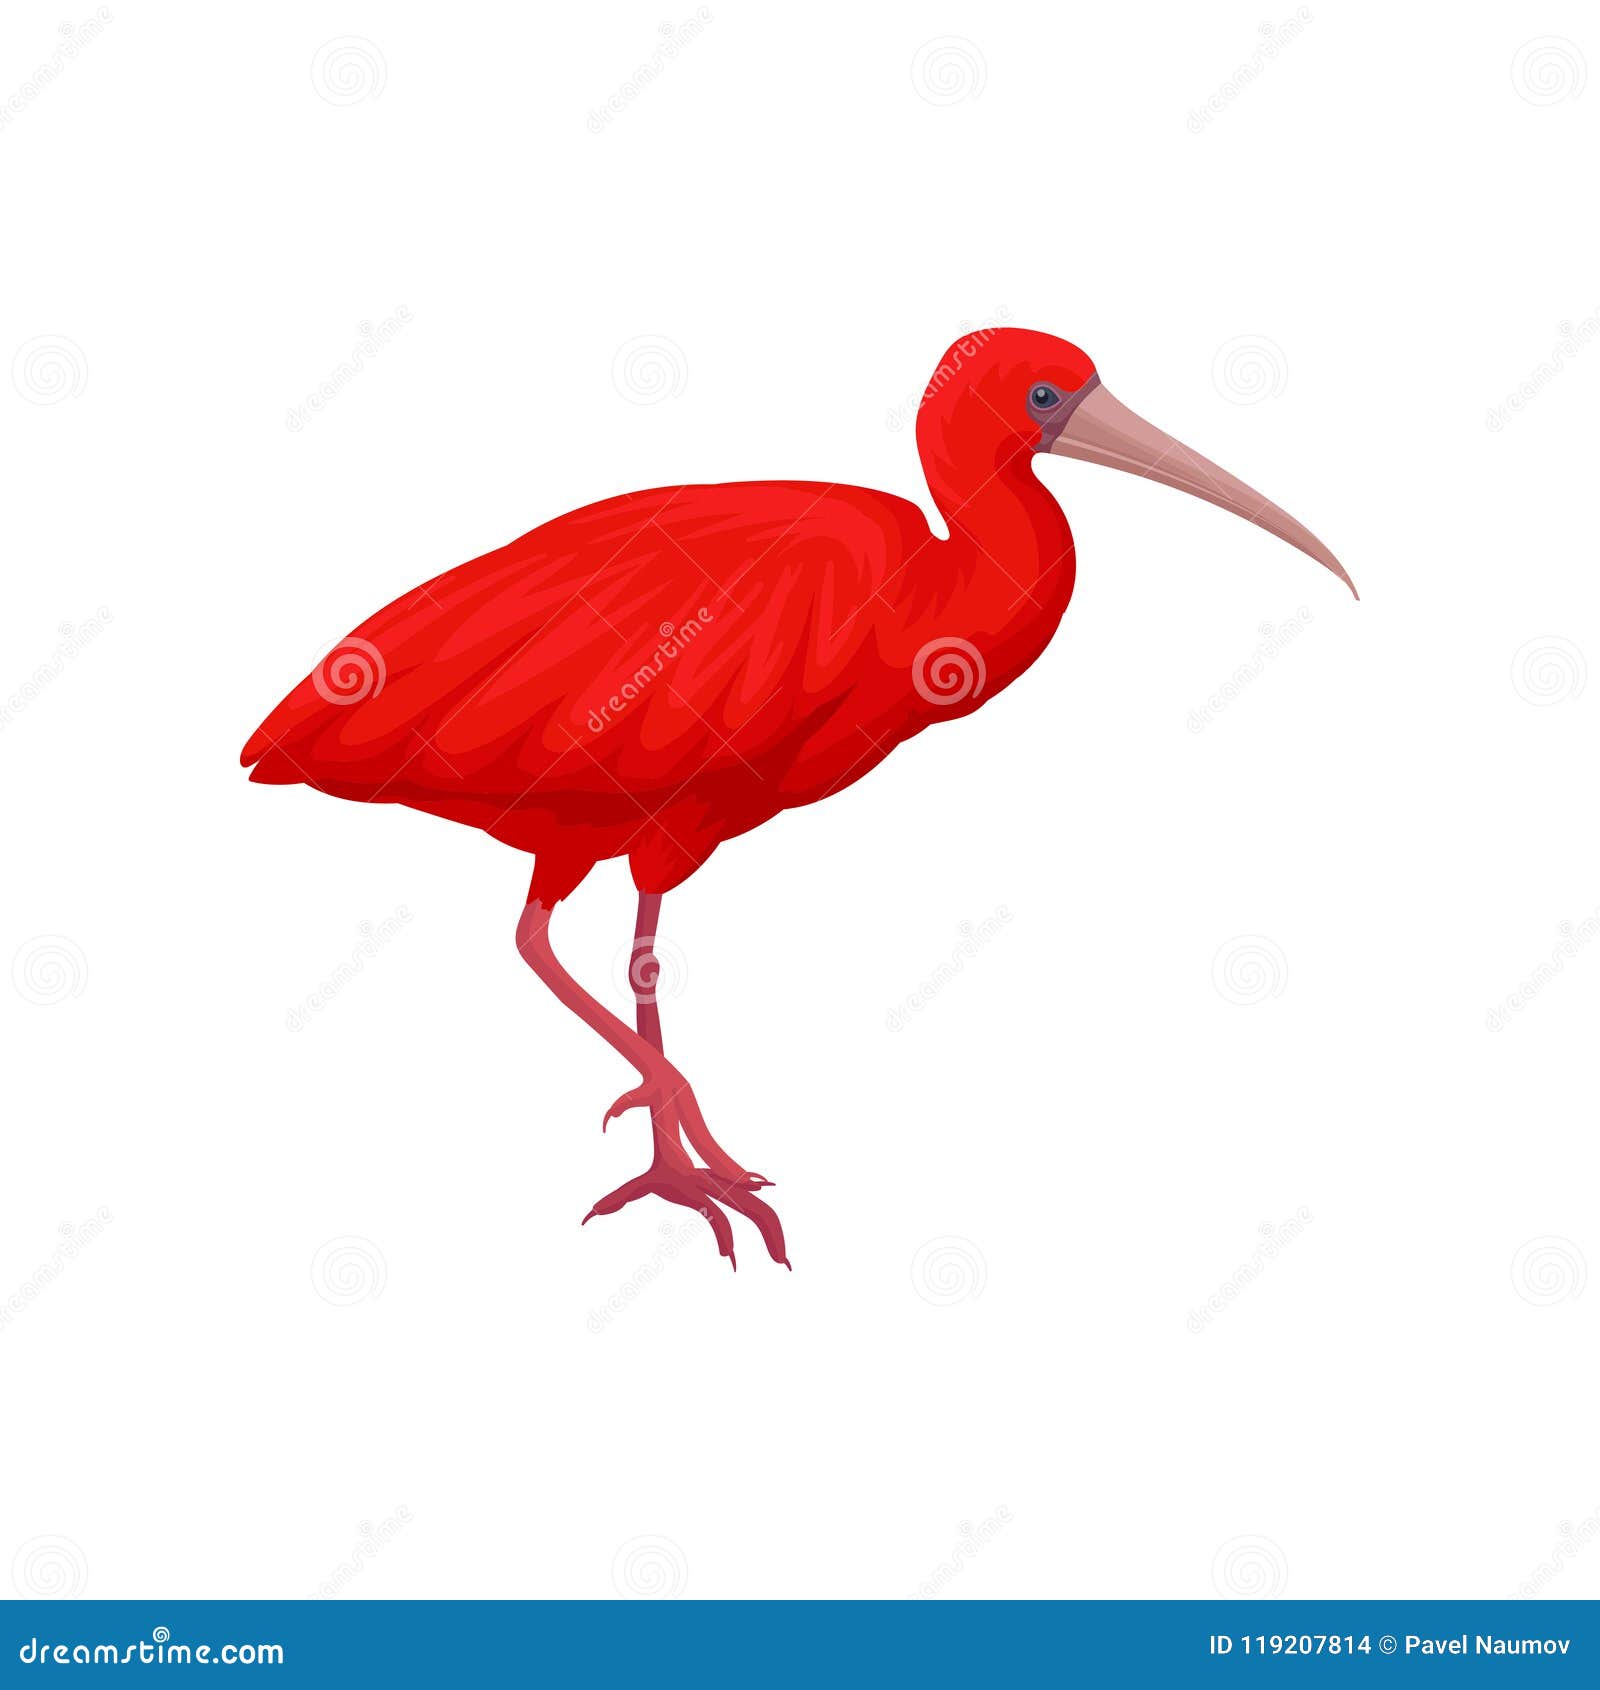 the scarlet ibis theme